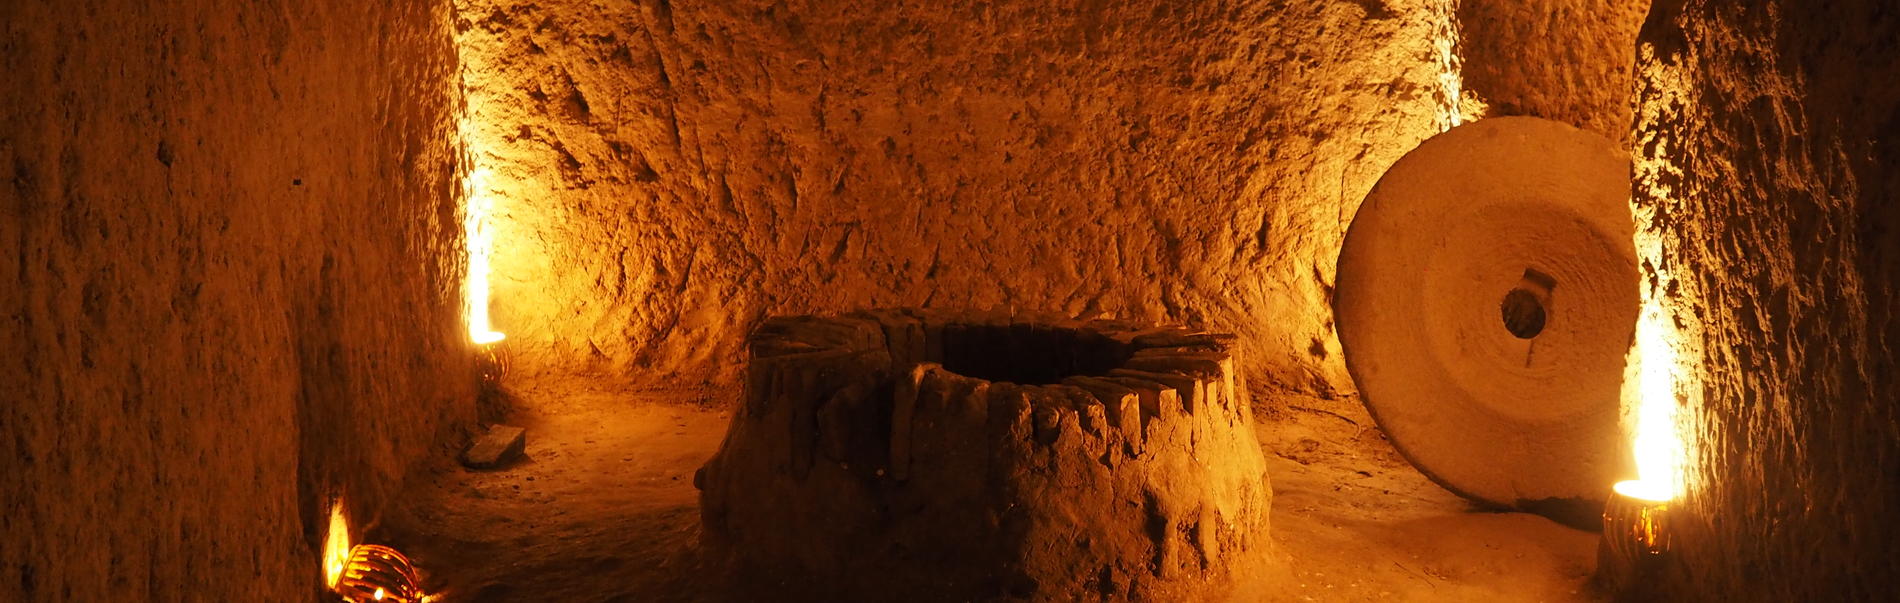 Подземный город Нушабад